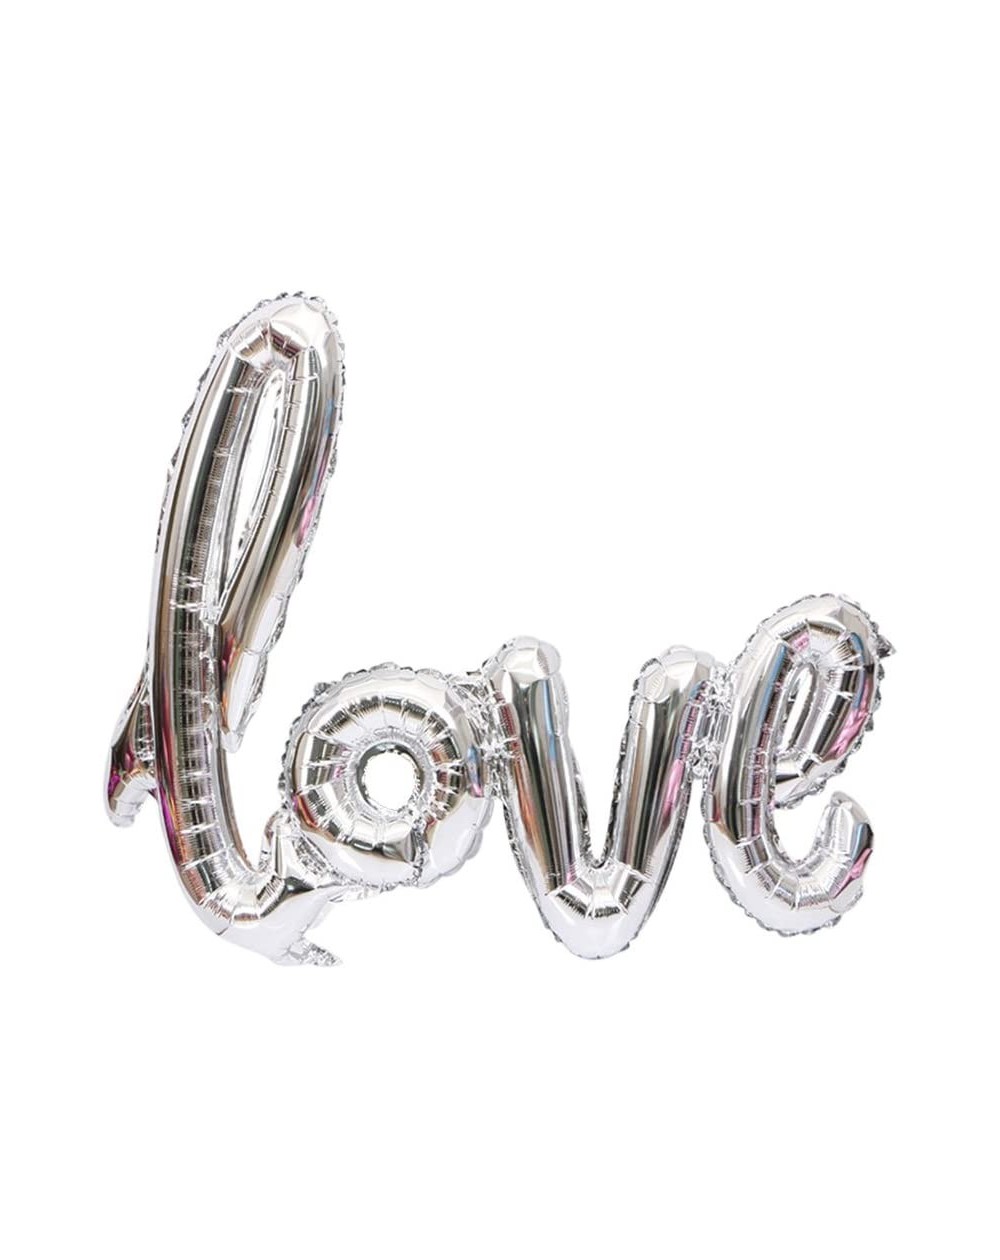 Balloons Love Balloons- Romantic Giant Love Letters Mylar Balloon Love Foil Balloons for Wedding Bridal Shower Anniversary En...